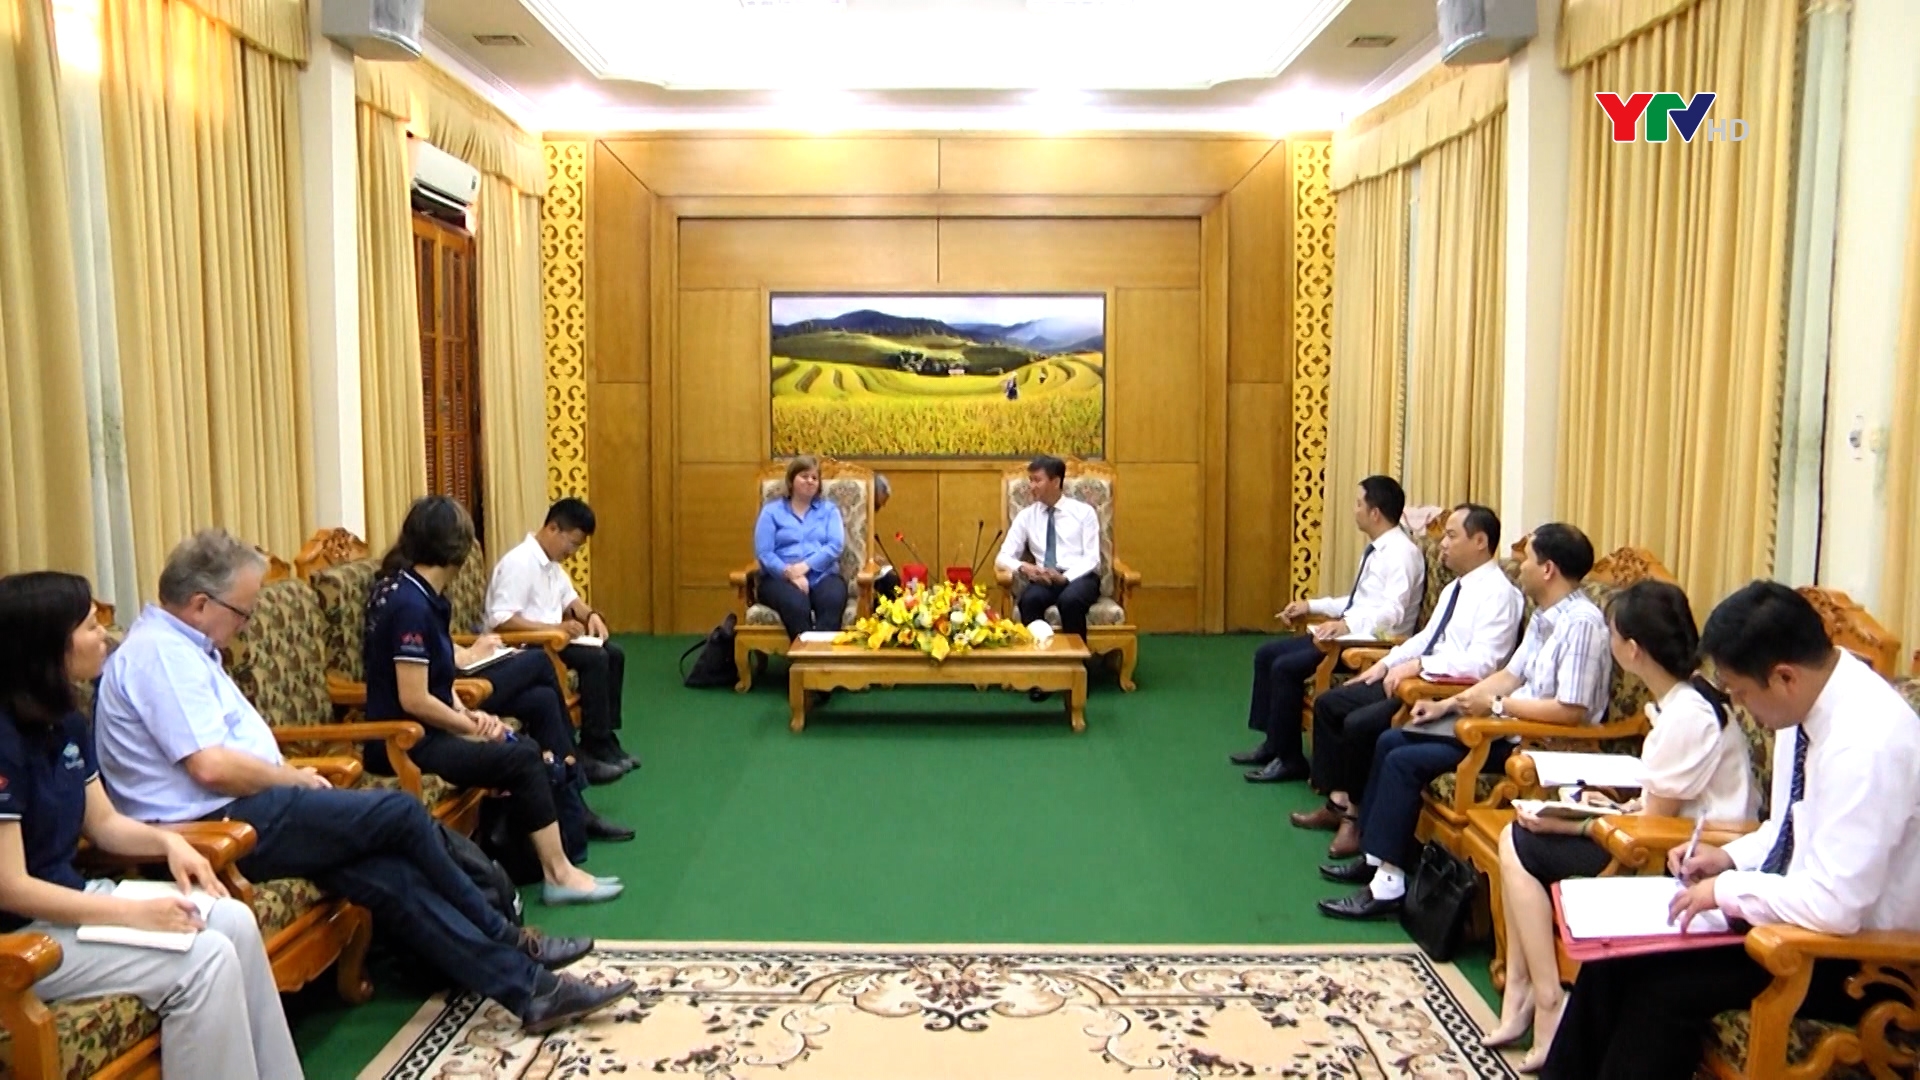 Đoàn công tác của Cơ quan Hợp tác phát triển Thụy Sỹ tại Việt Nam chào xã giao lãnh đạo tỉnh Yên Bái